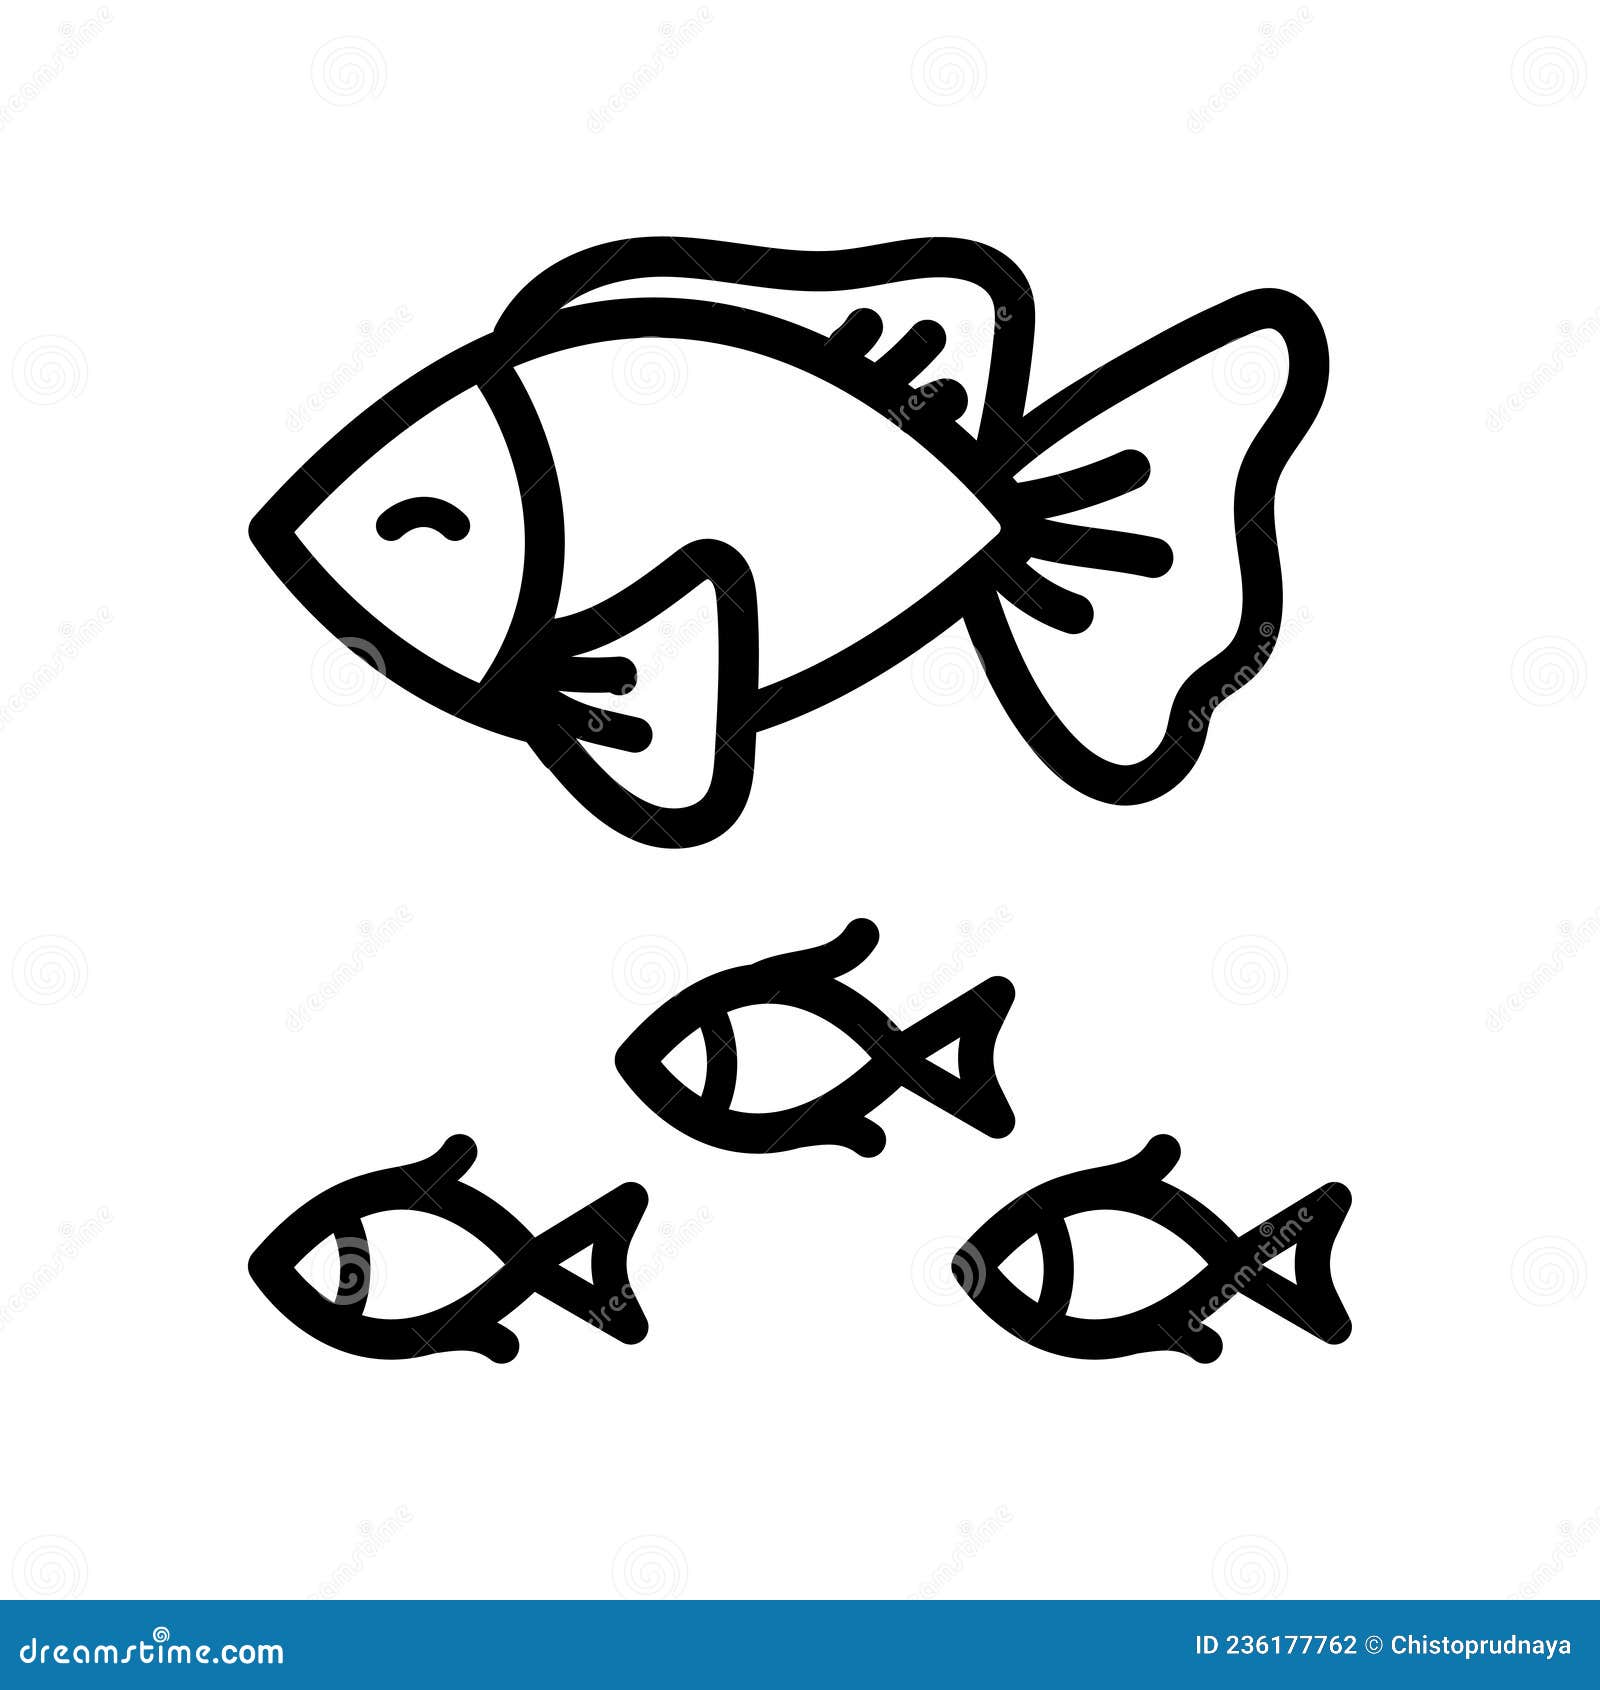 Small fish sketch icon., Stock vector